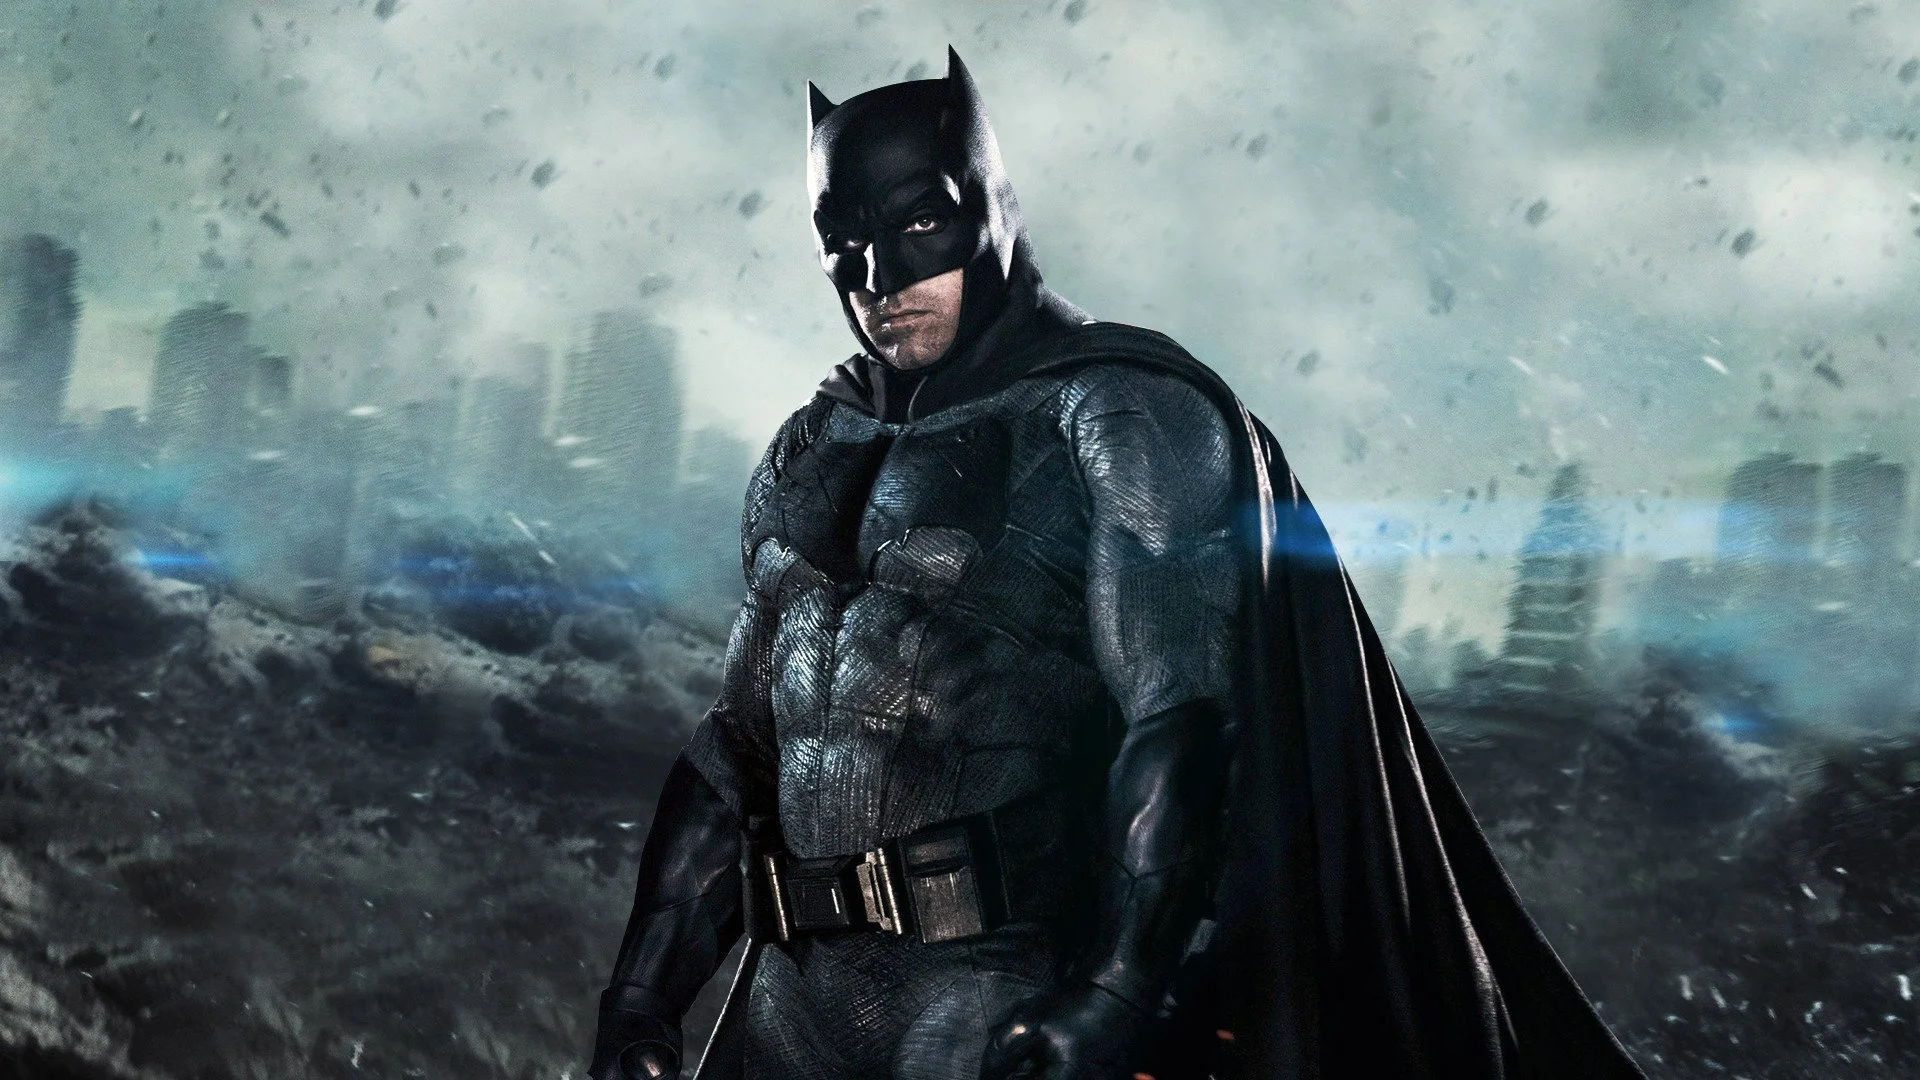 Слух: в 2019 году выйдет 4 фильма про Бэтмена - фото 1